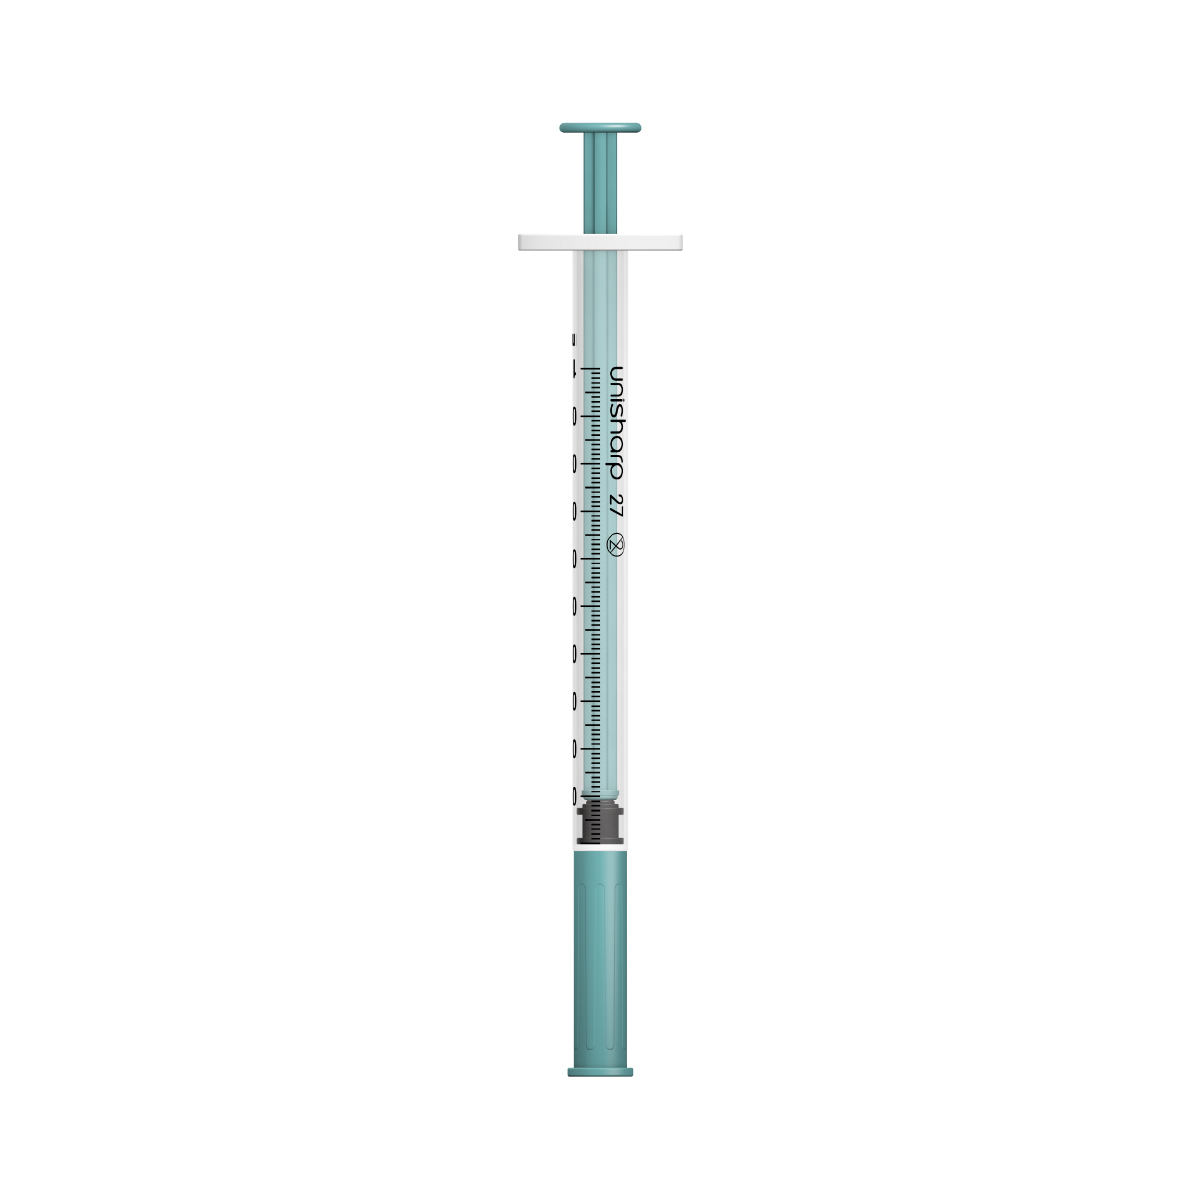 Unisharp 1ml 27G fixed needle syringe: Teal Green